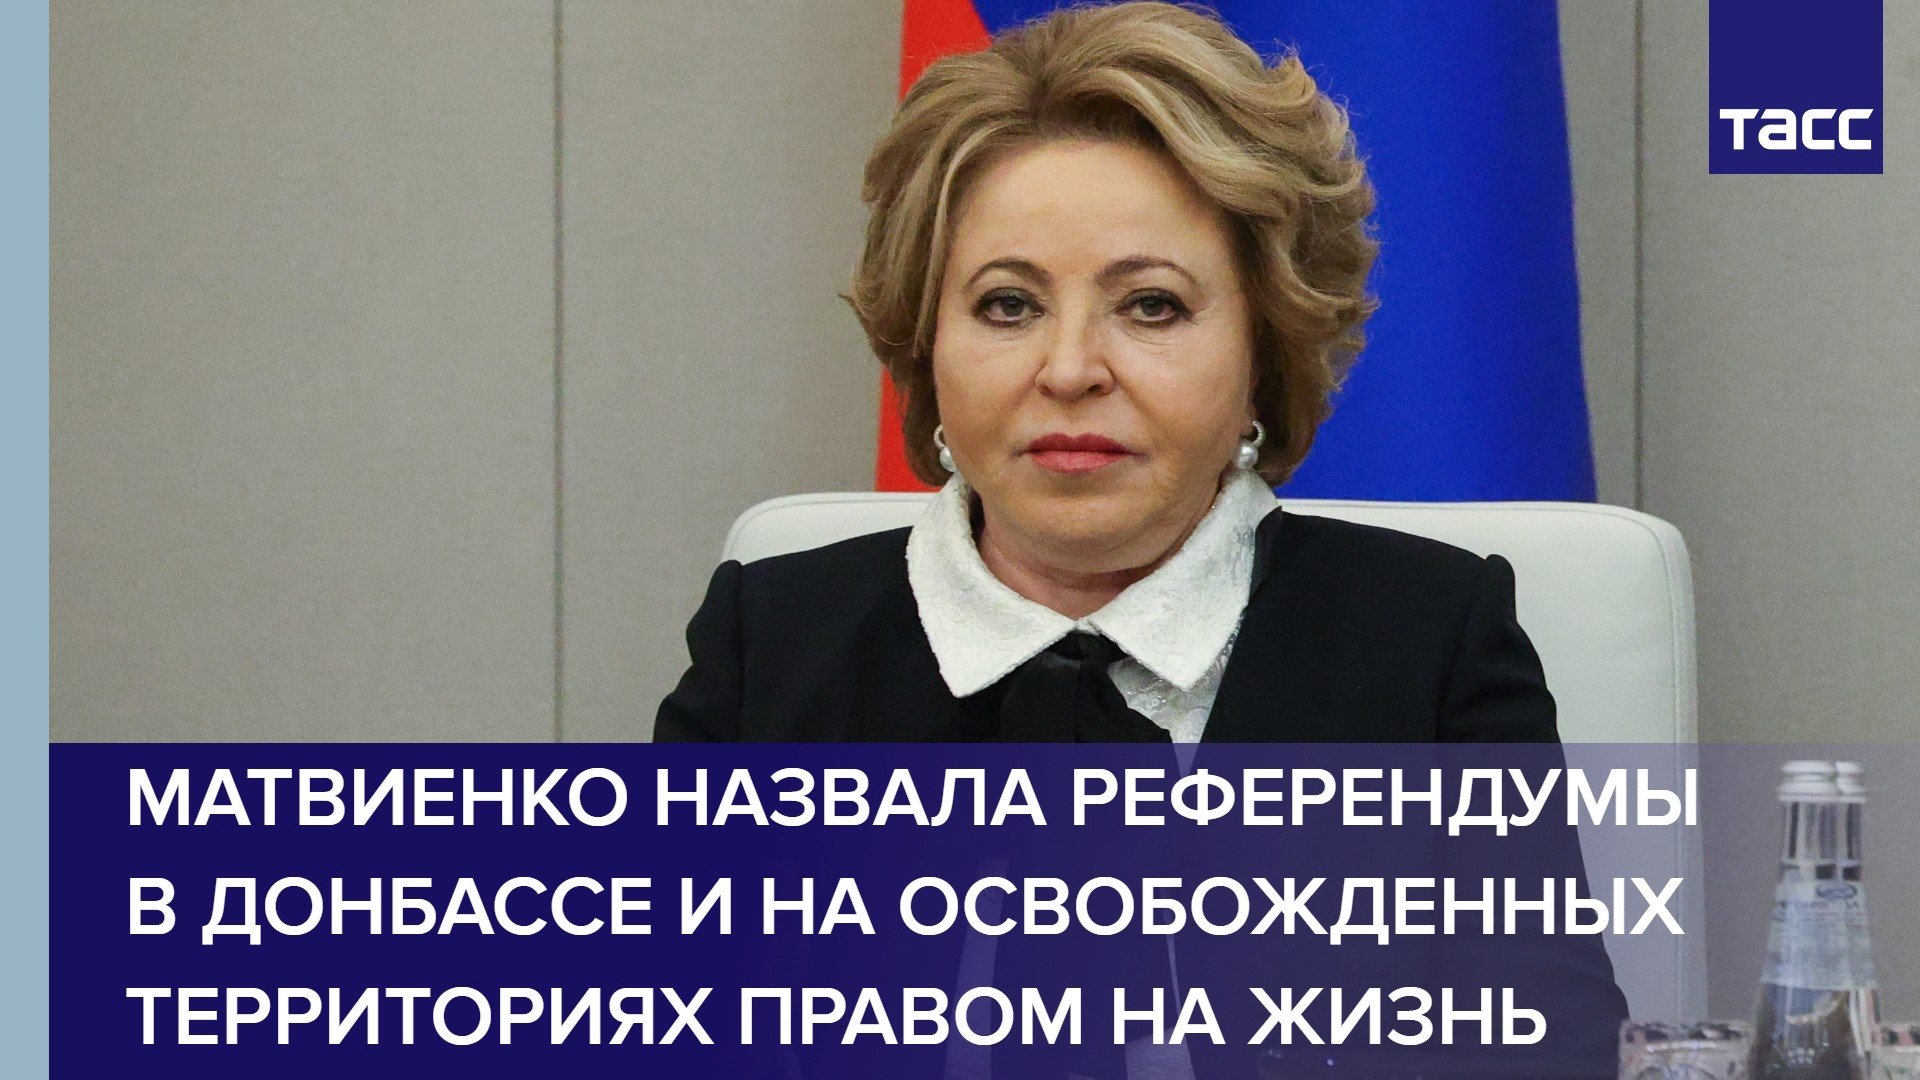 Матвиенко назвала референдумы в Донбассе и на освобожденных территориях правом на жизнь #shorts